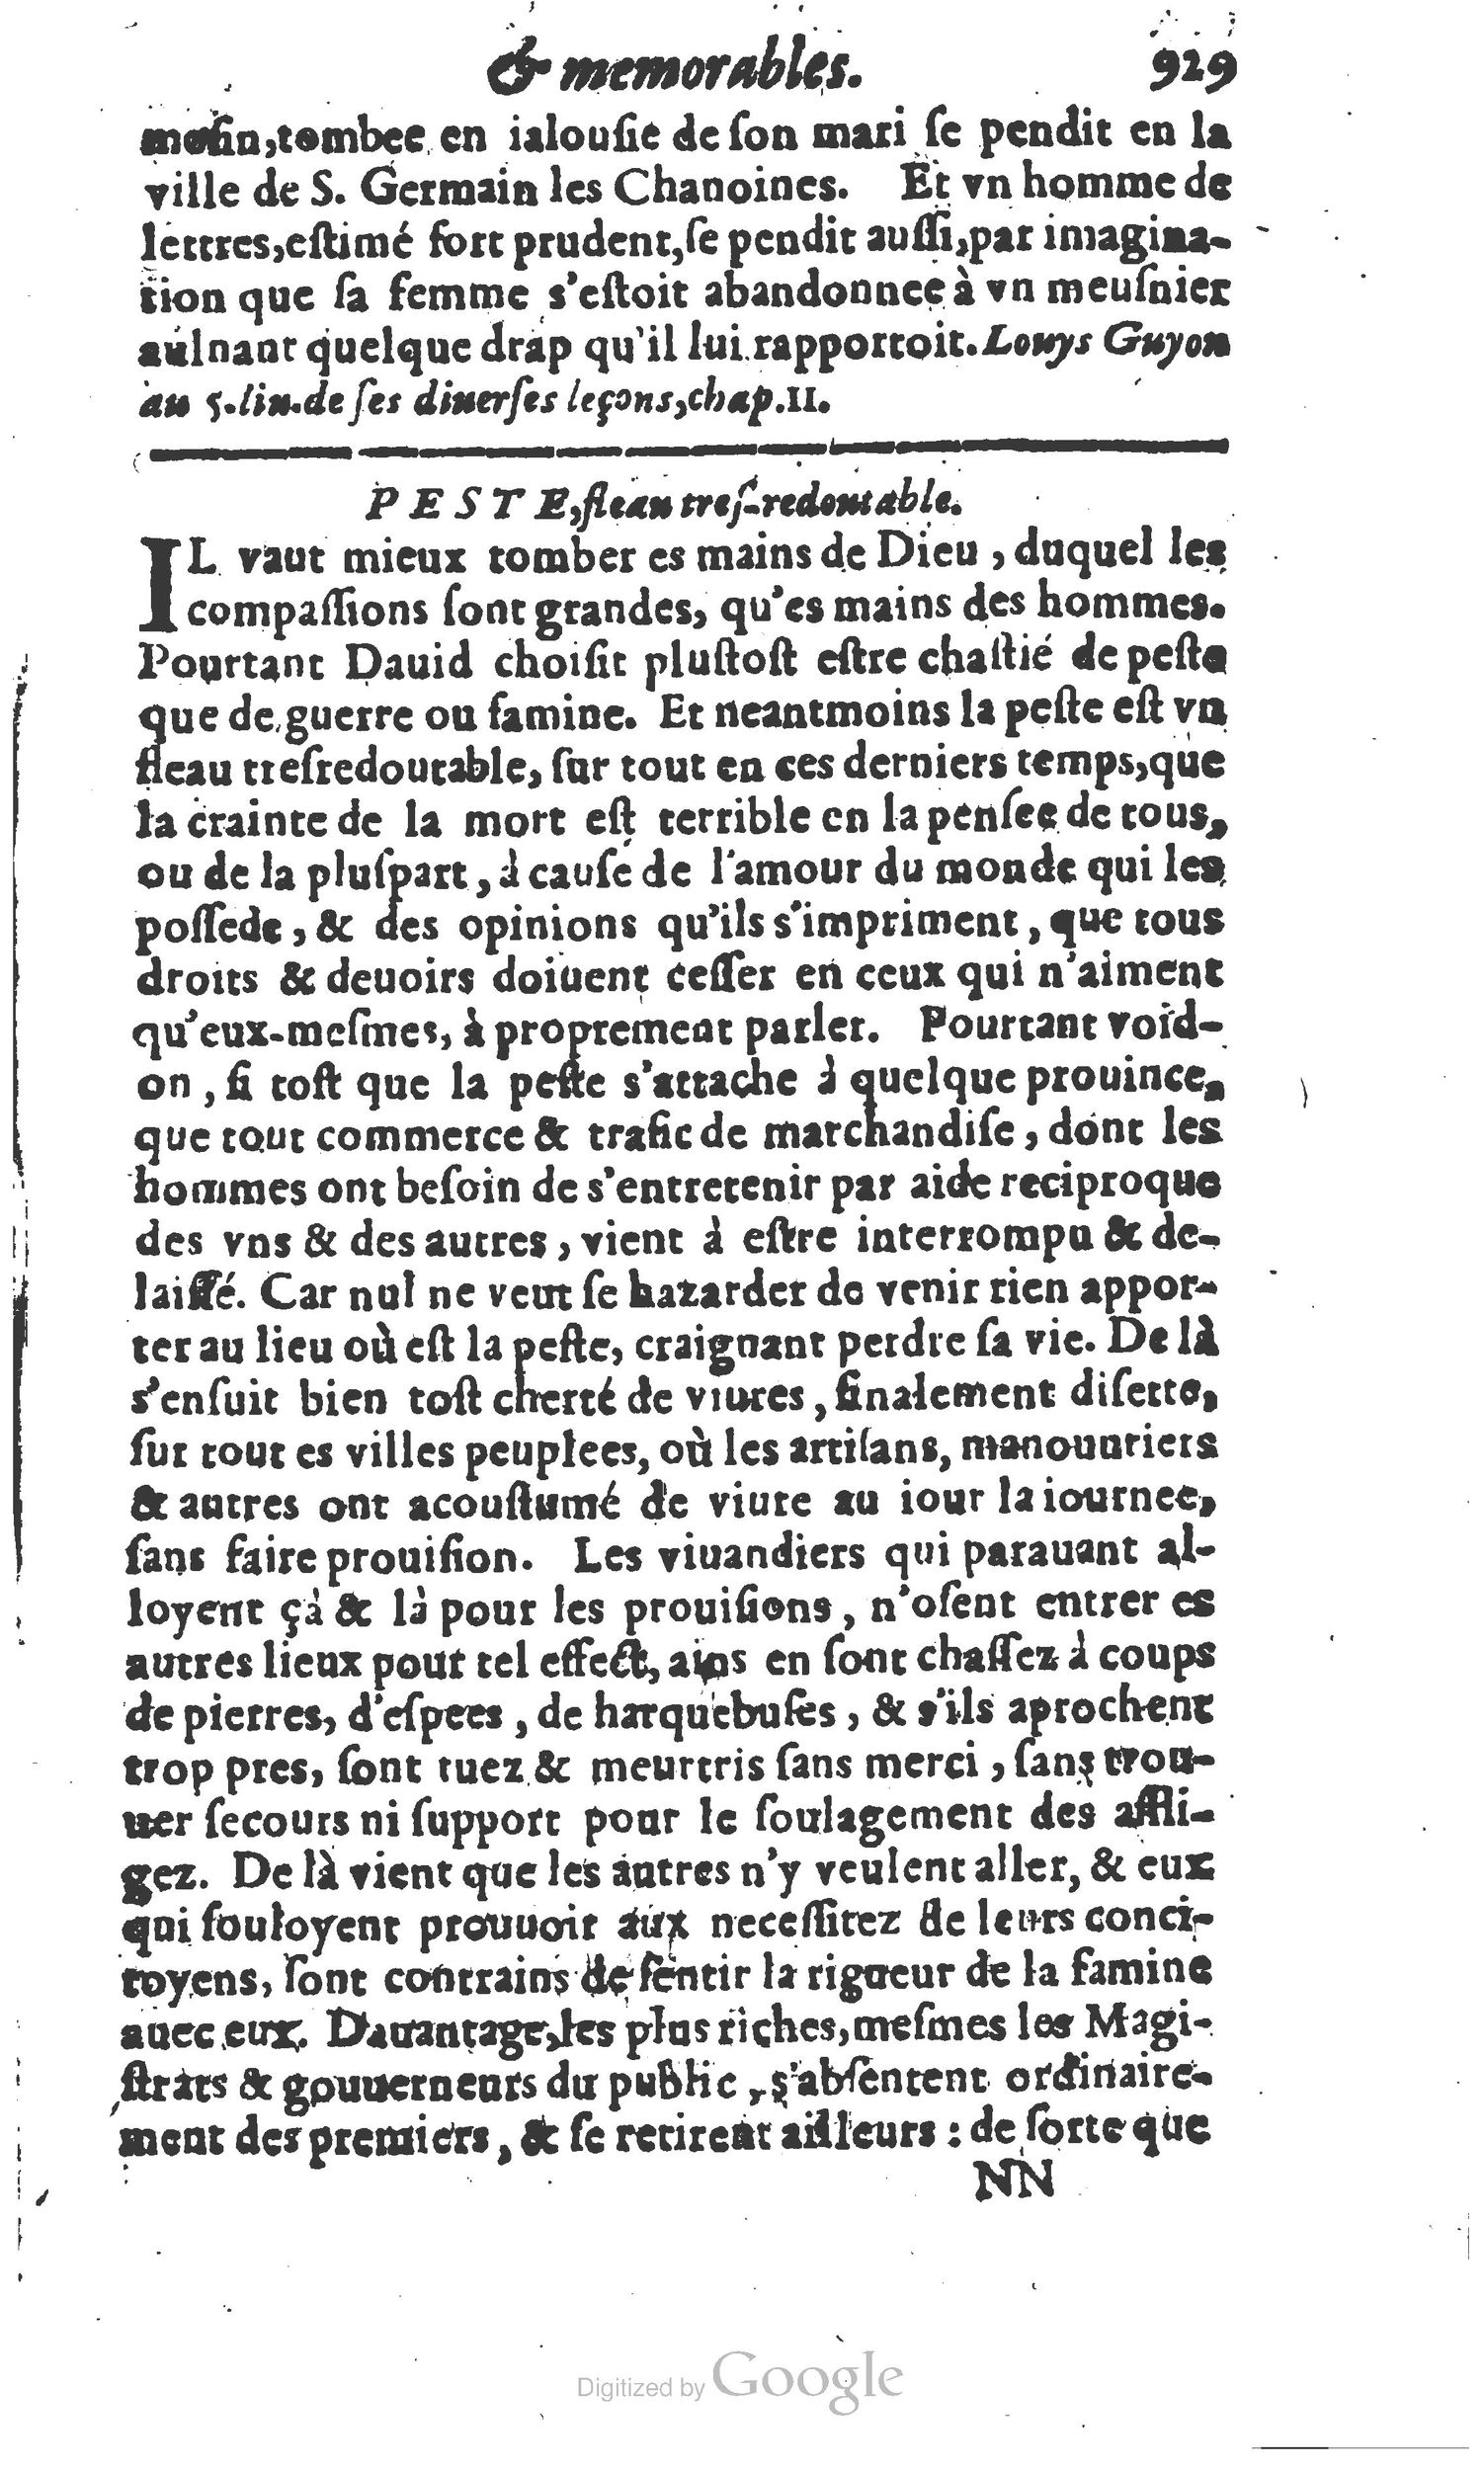 1610 Trésor d’histoires admirables et mémorables de nostre temps Marceau Princeton_Page_0950.jpg